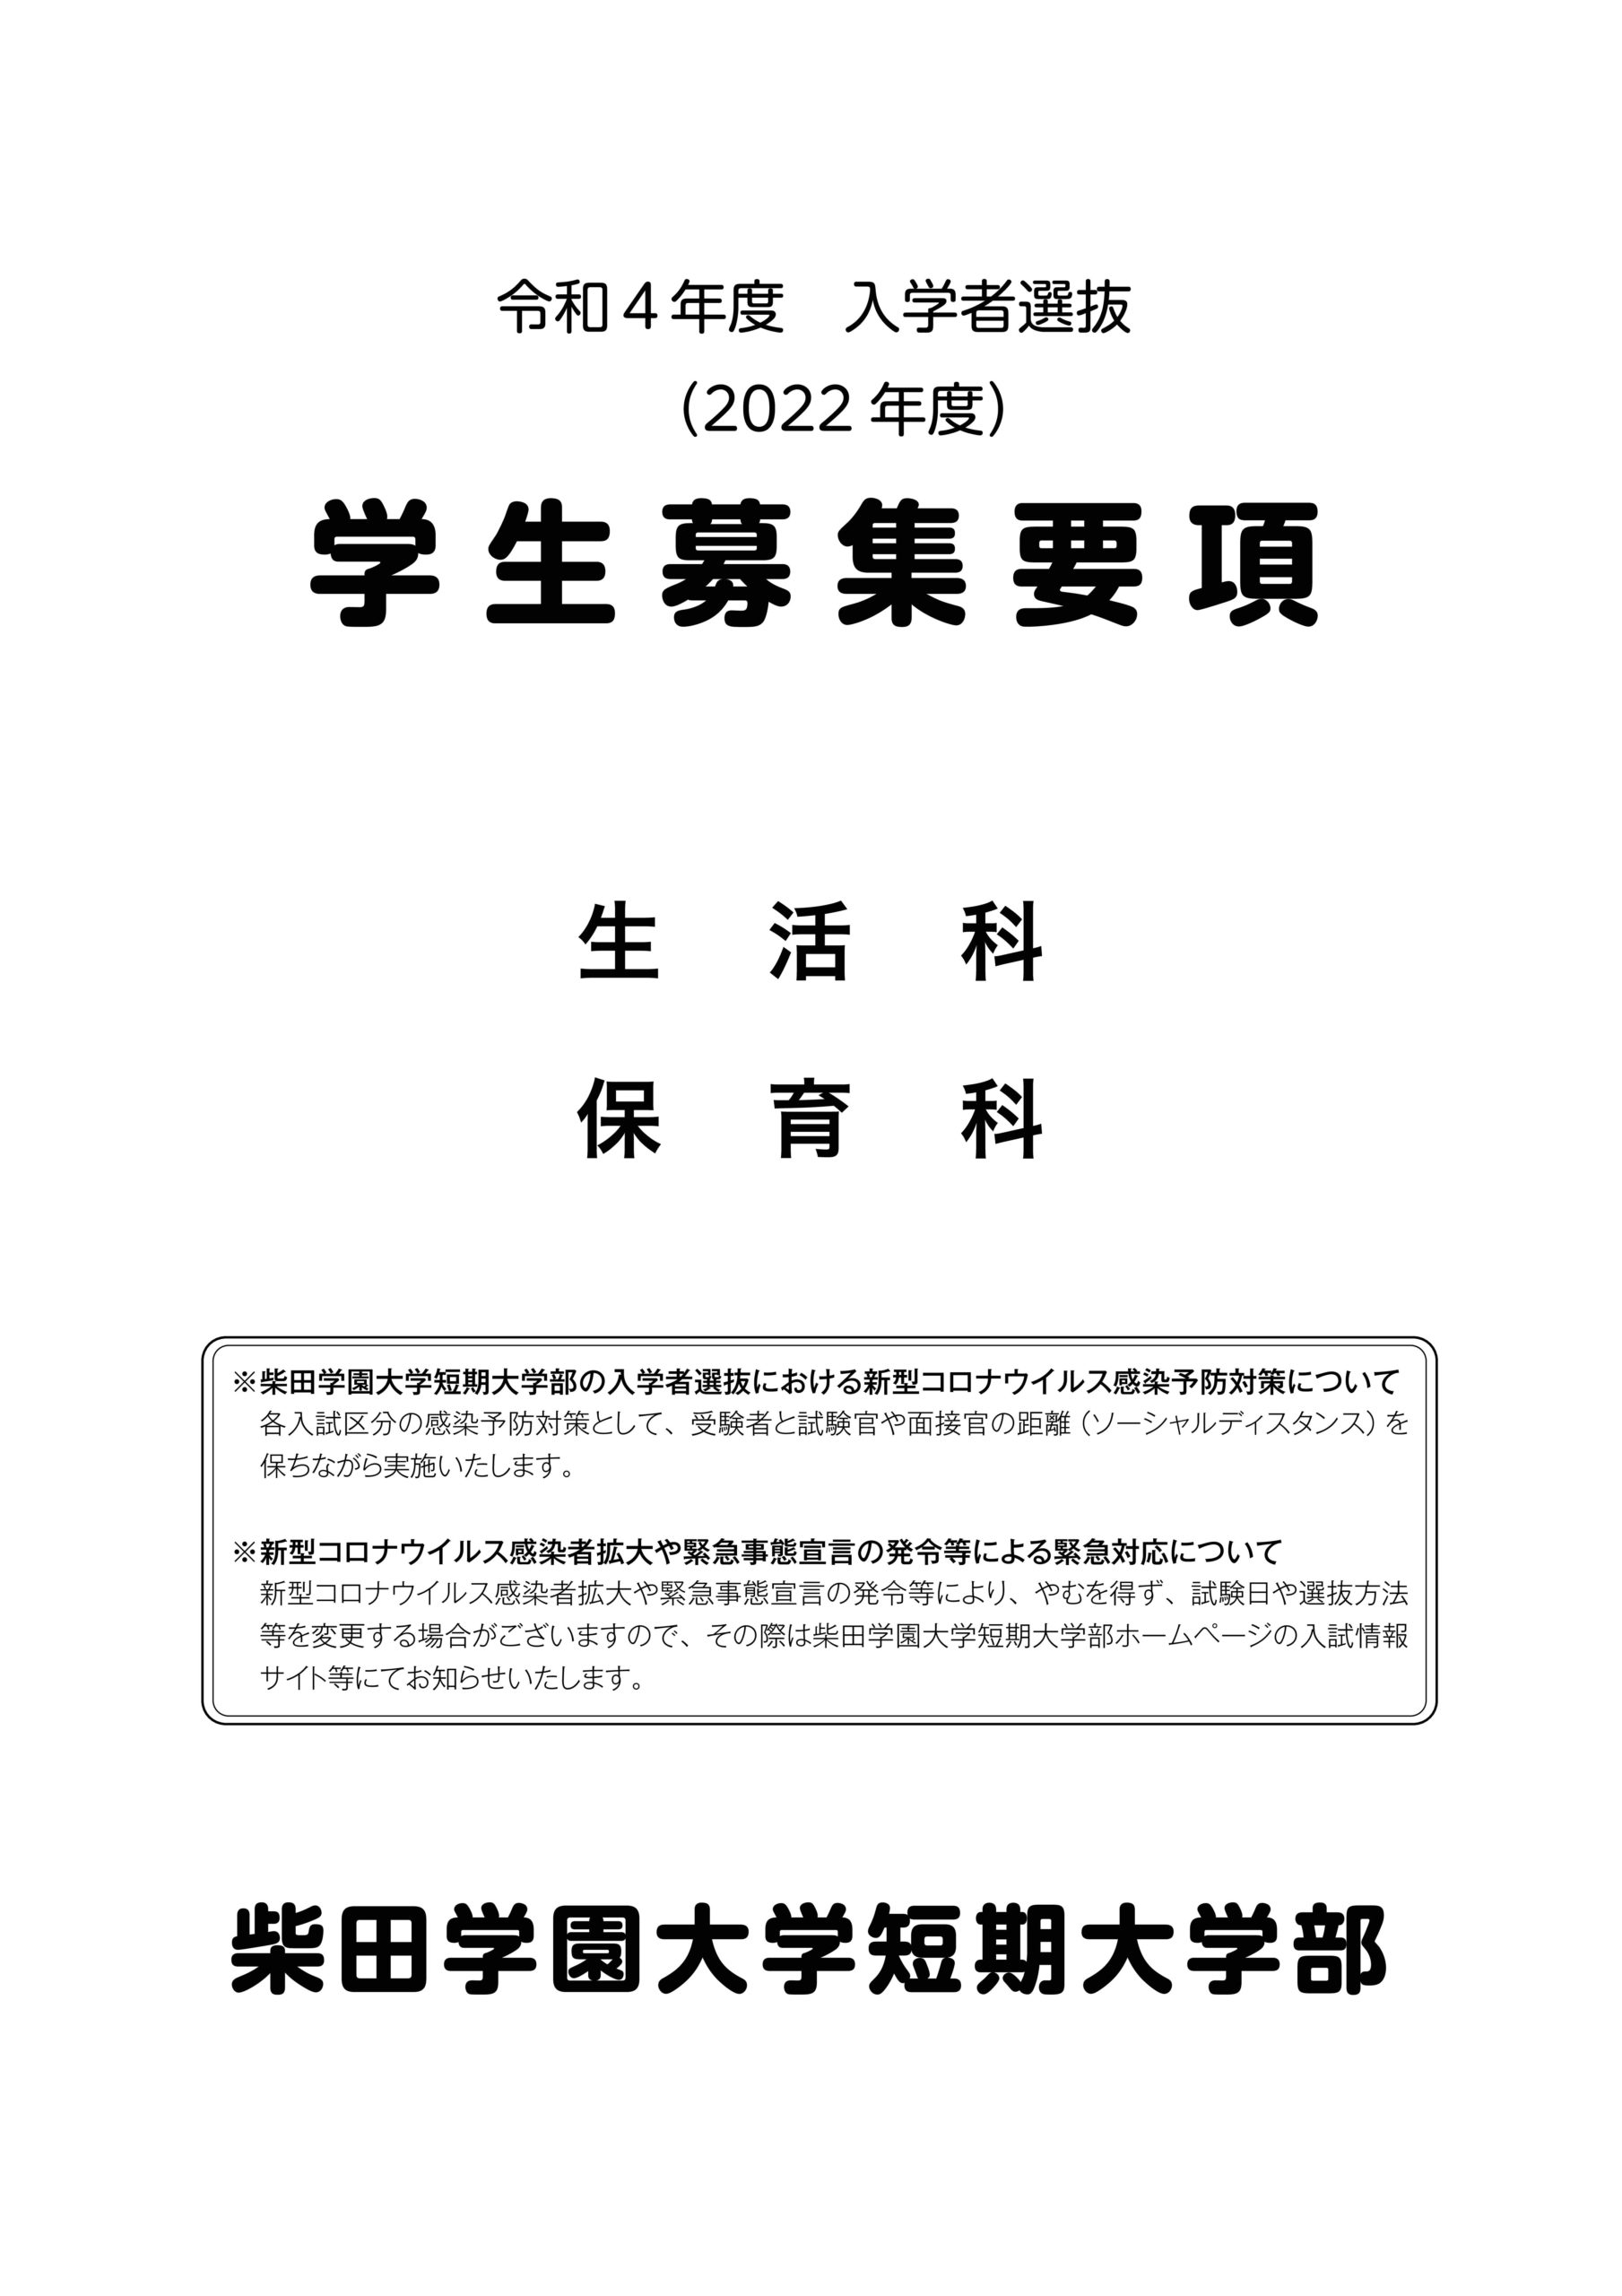 2021年度 柴田学園大学短期大学部募集要項